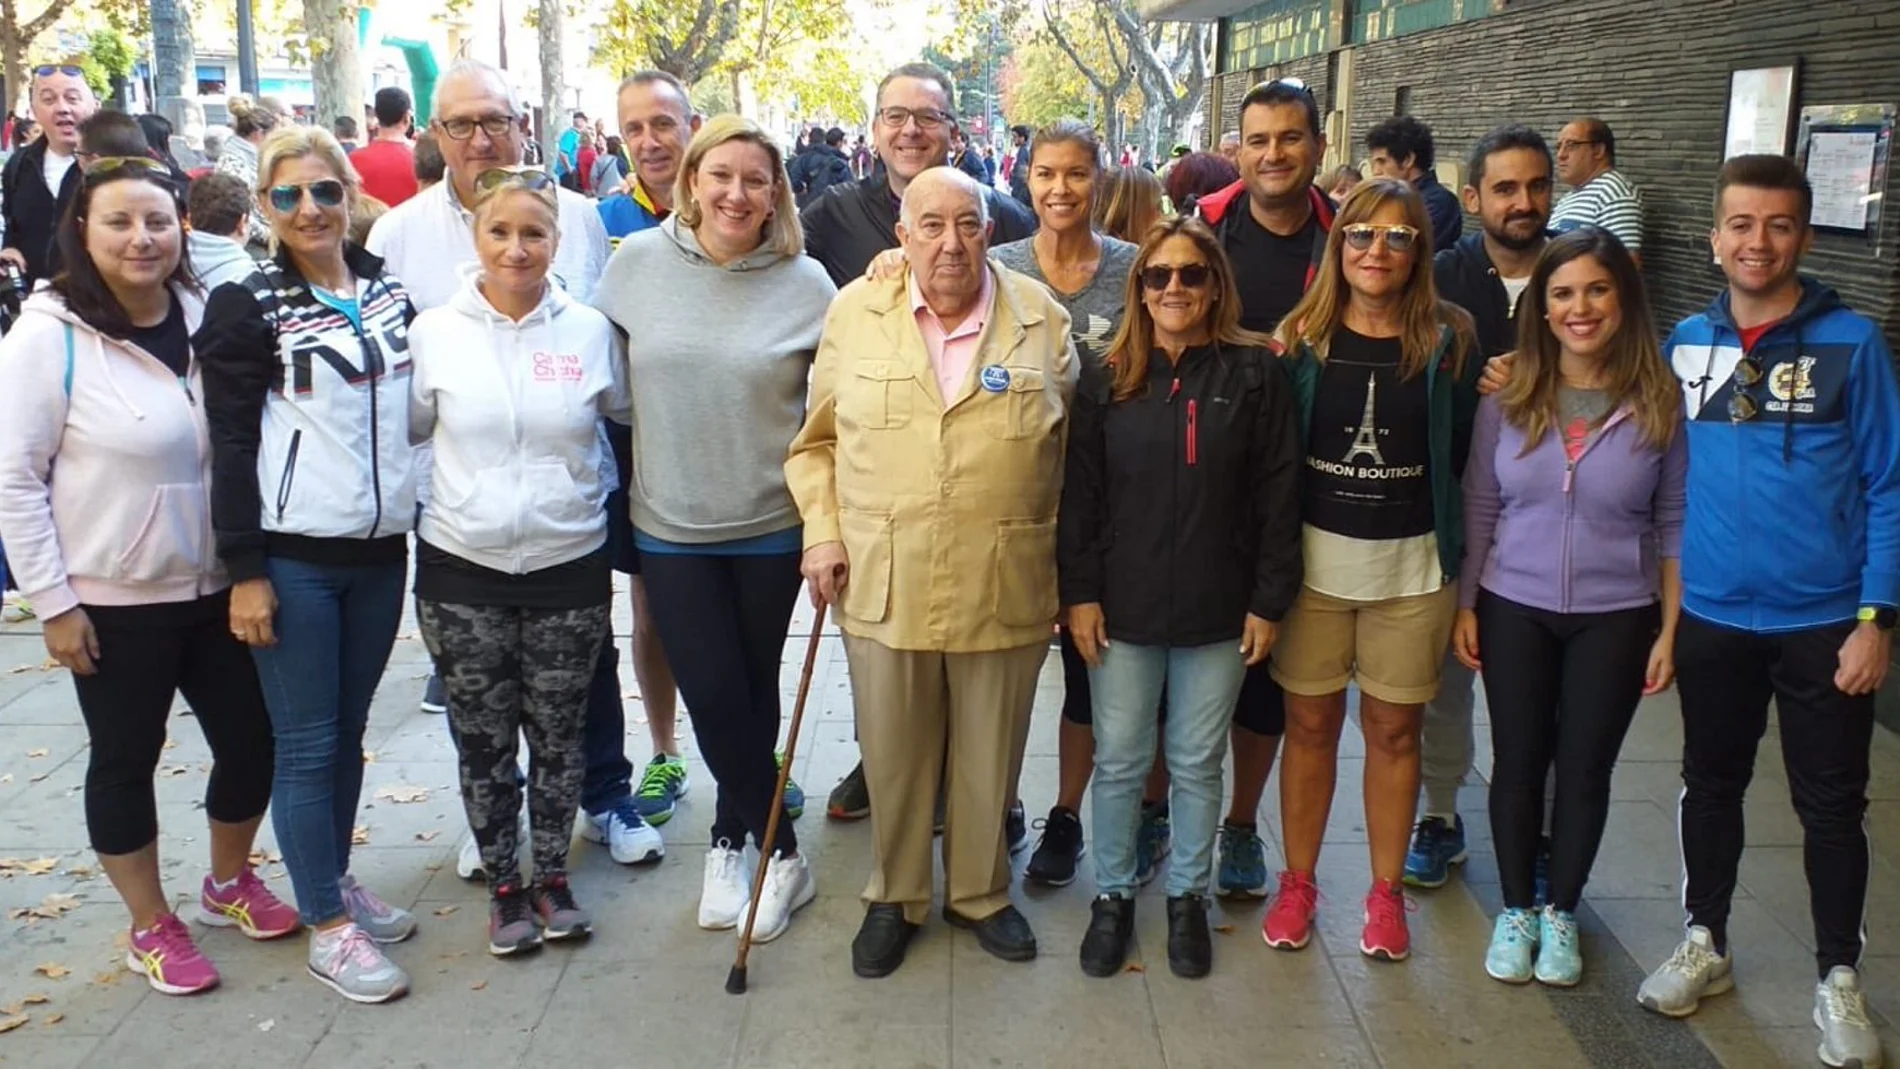 La consejera Blanco en la marcha en Zamora a favor de Asprosub